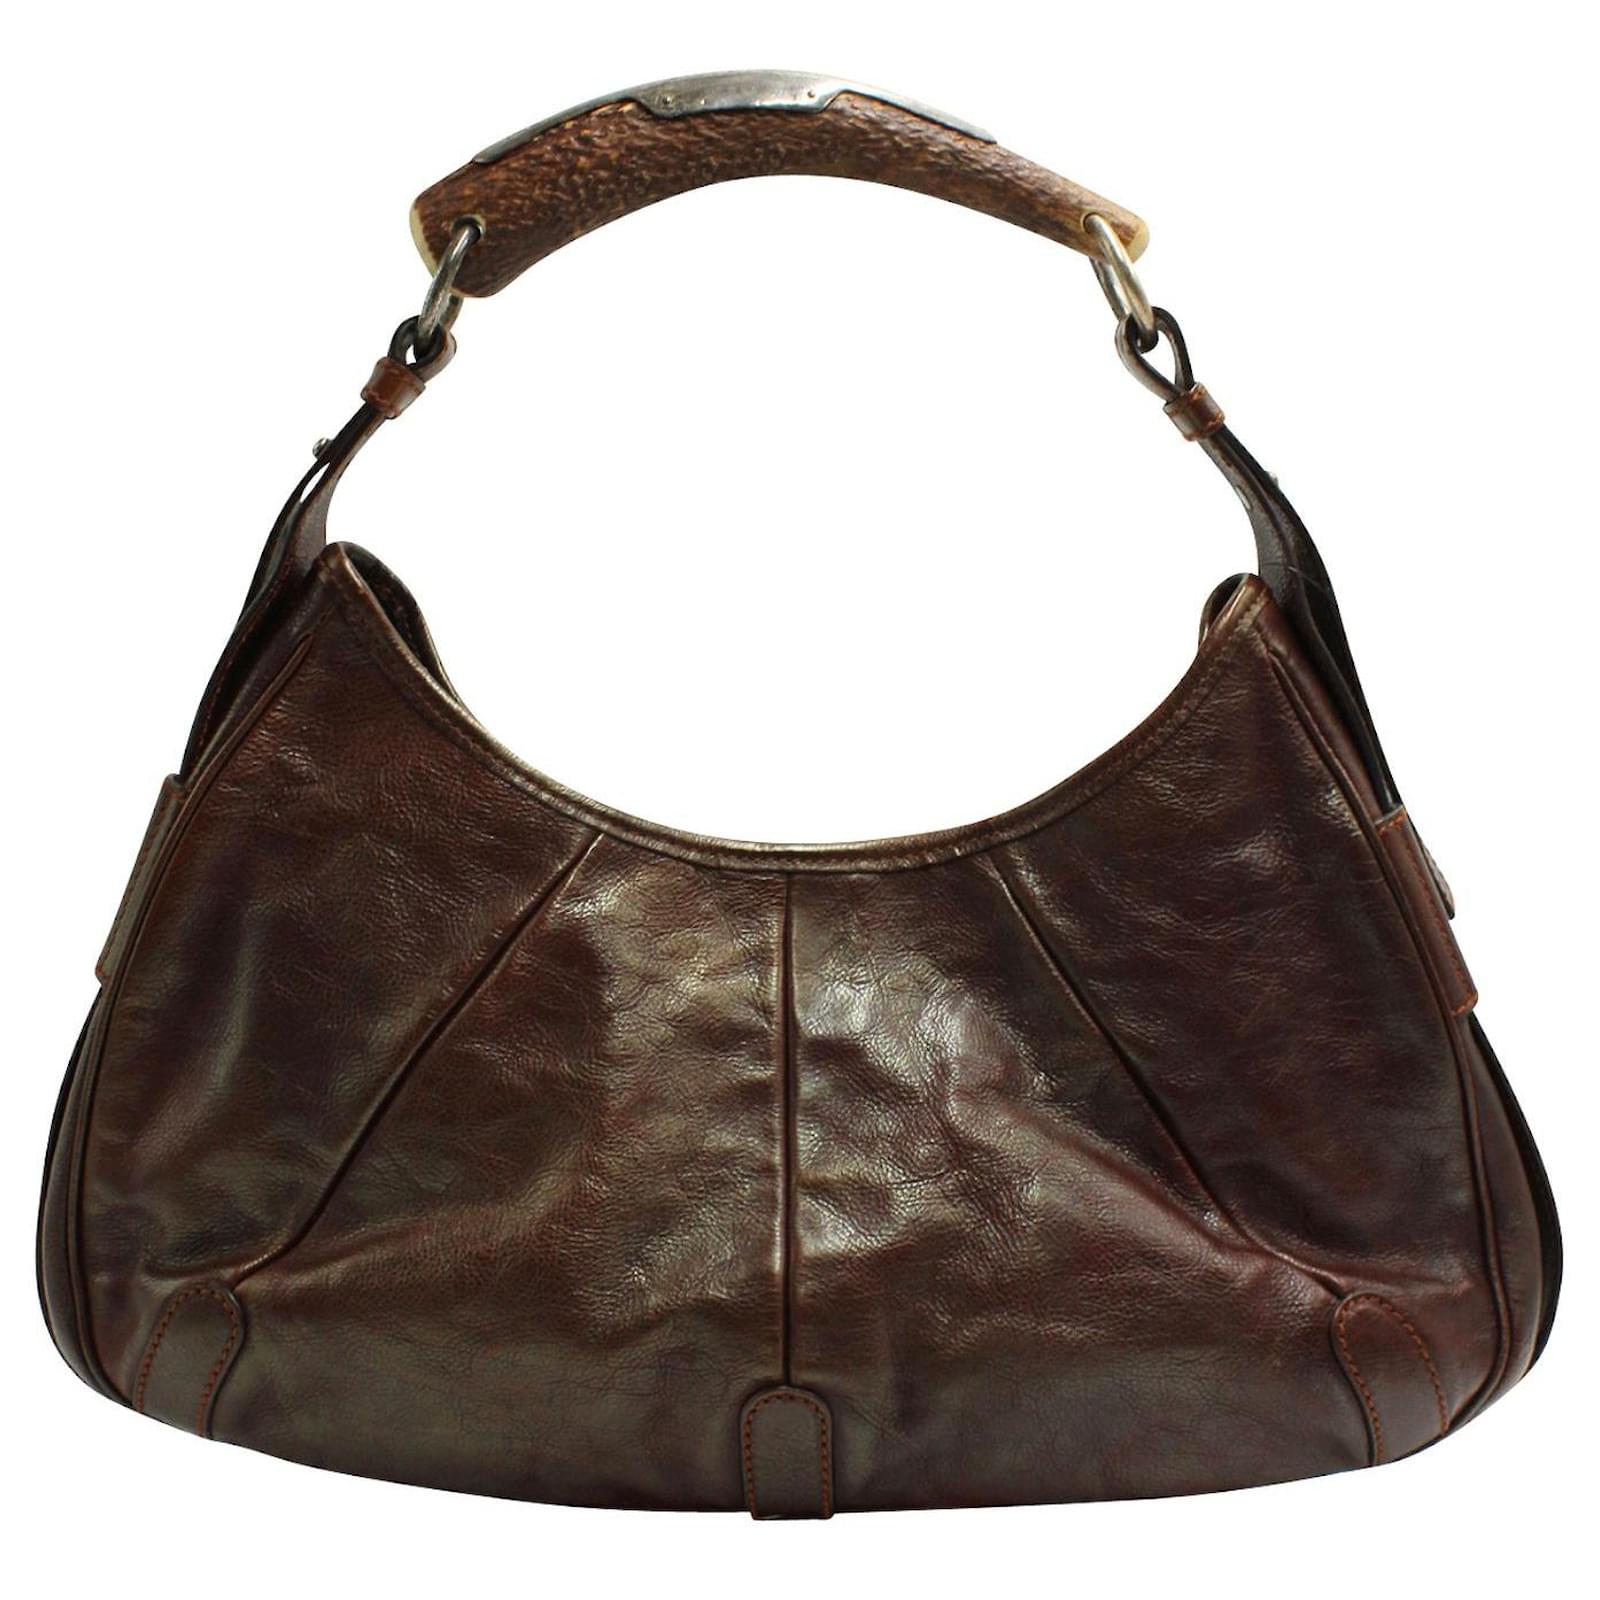 YSL antique old bag / made in France / VINTAGE Yves Saint Laurent